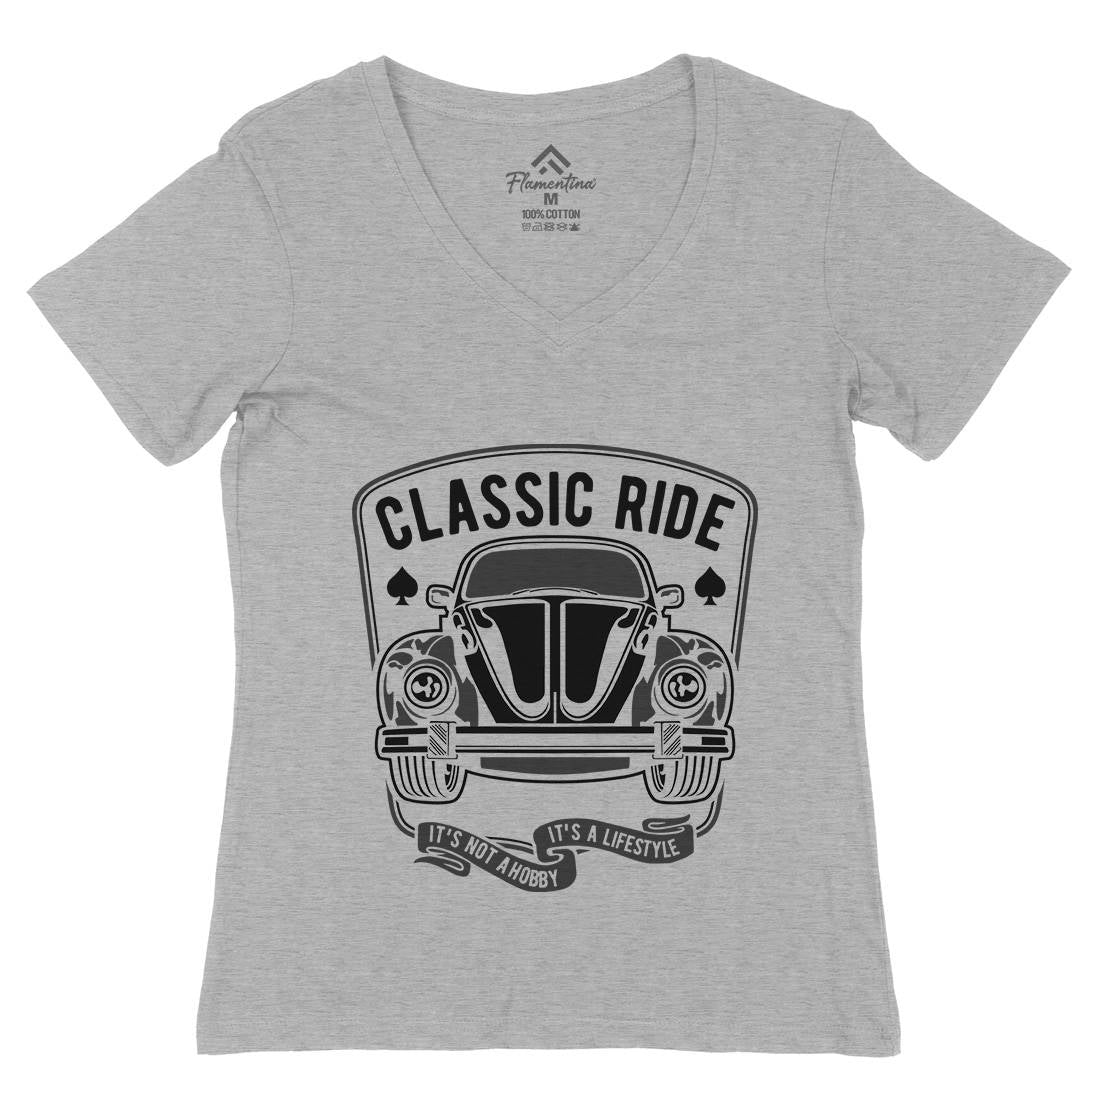 Classic Ride Womens Organic V-Neck T-Shirt Cars B195